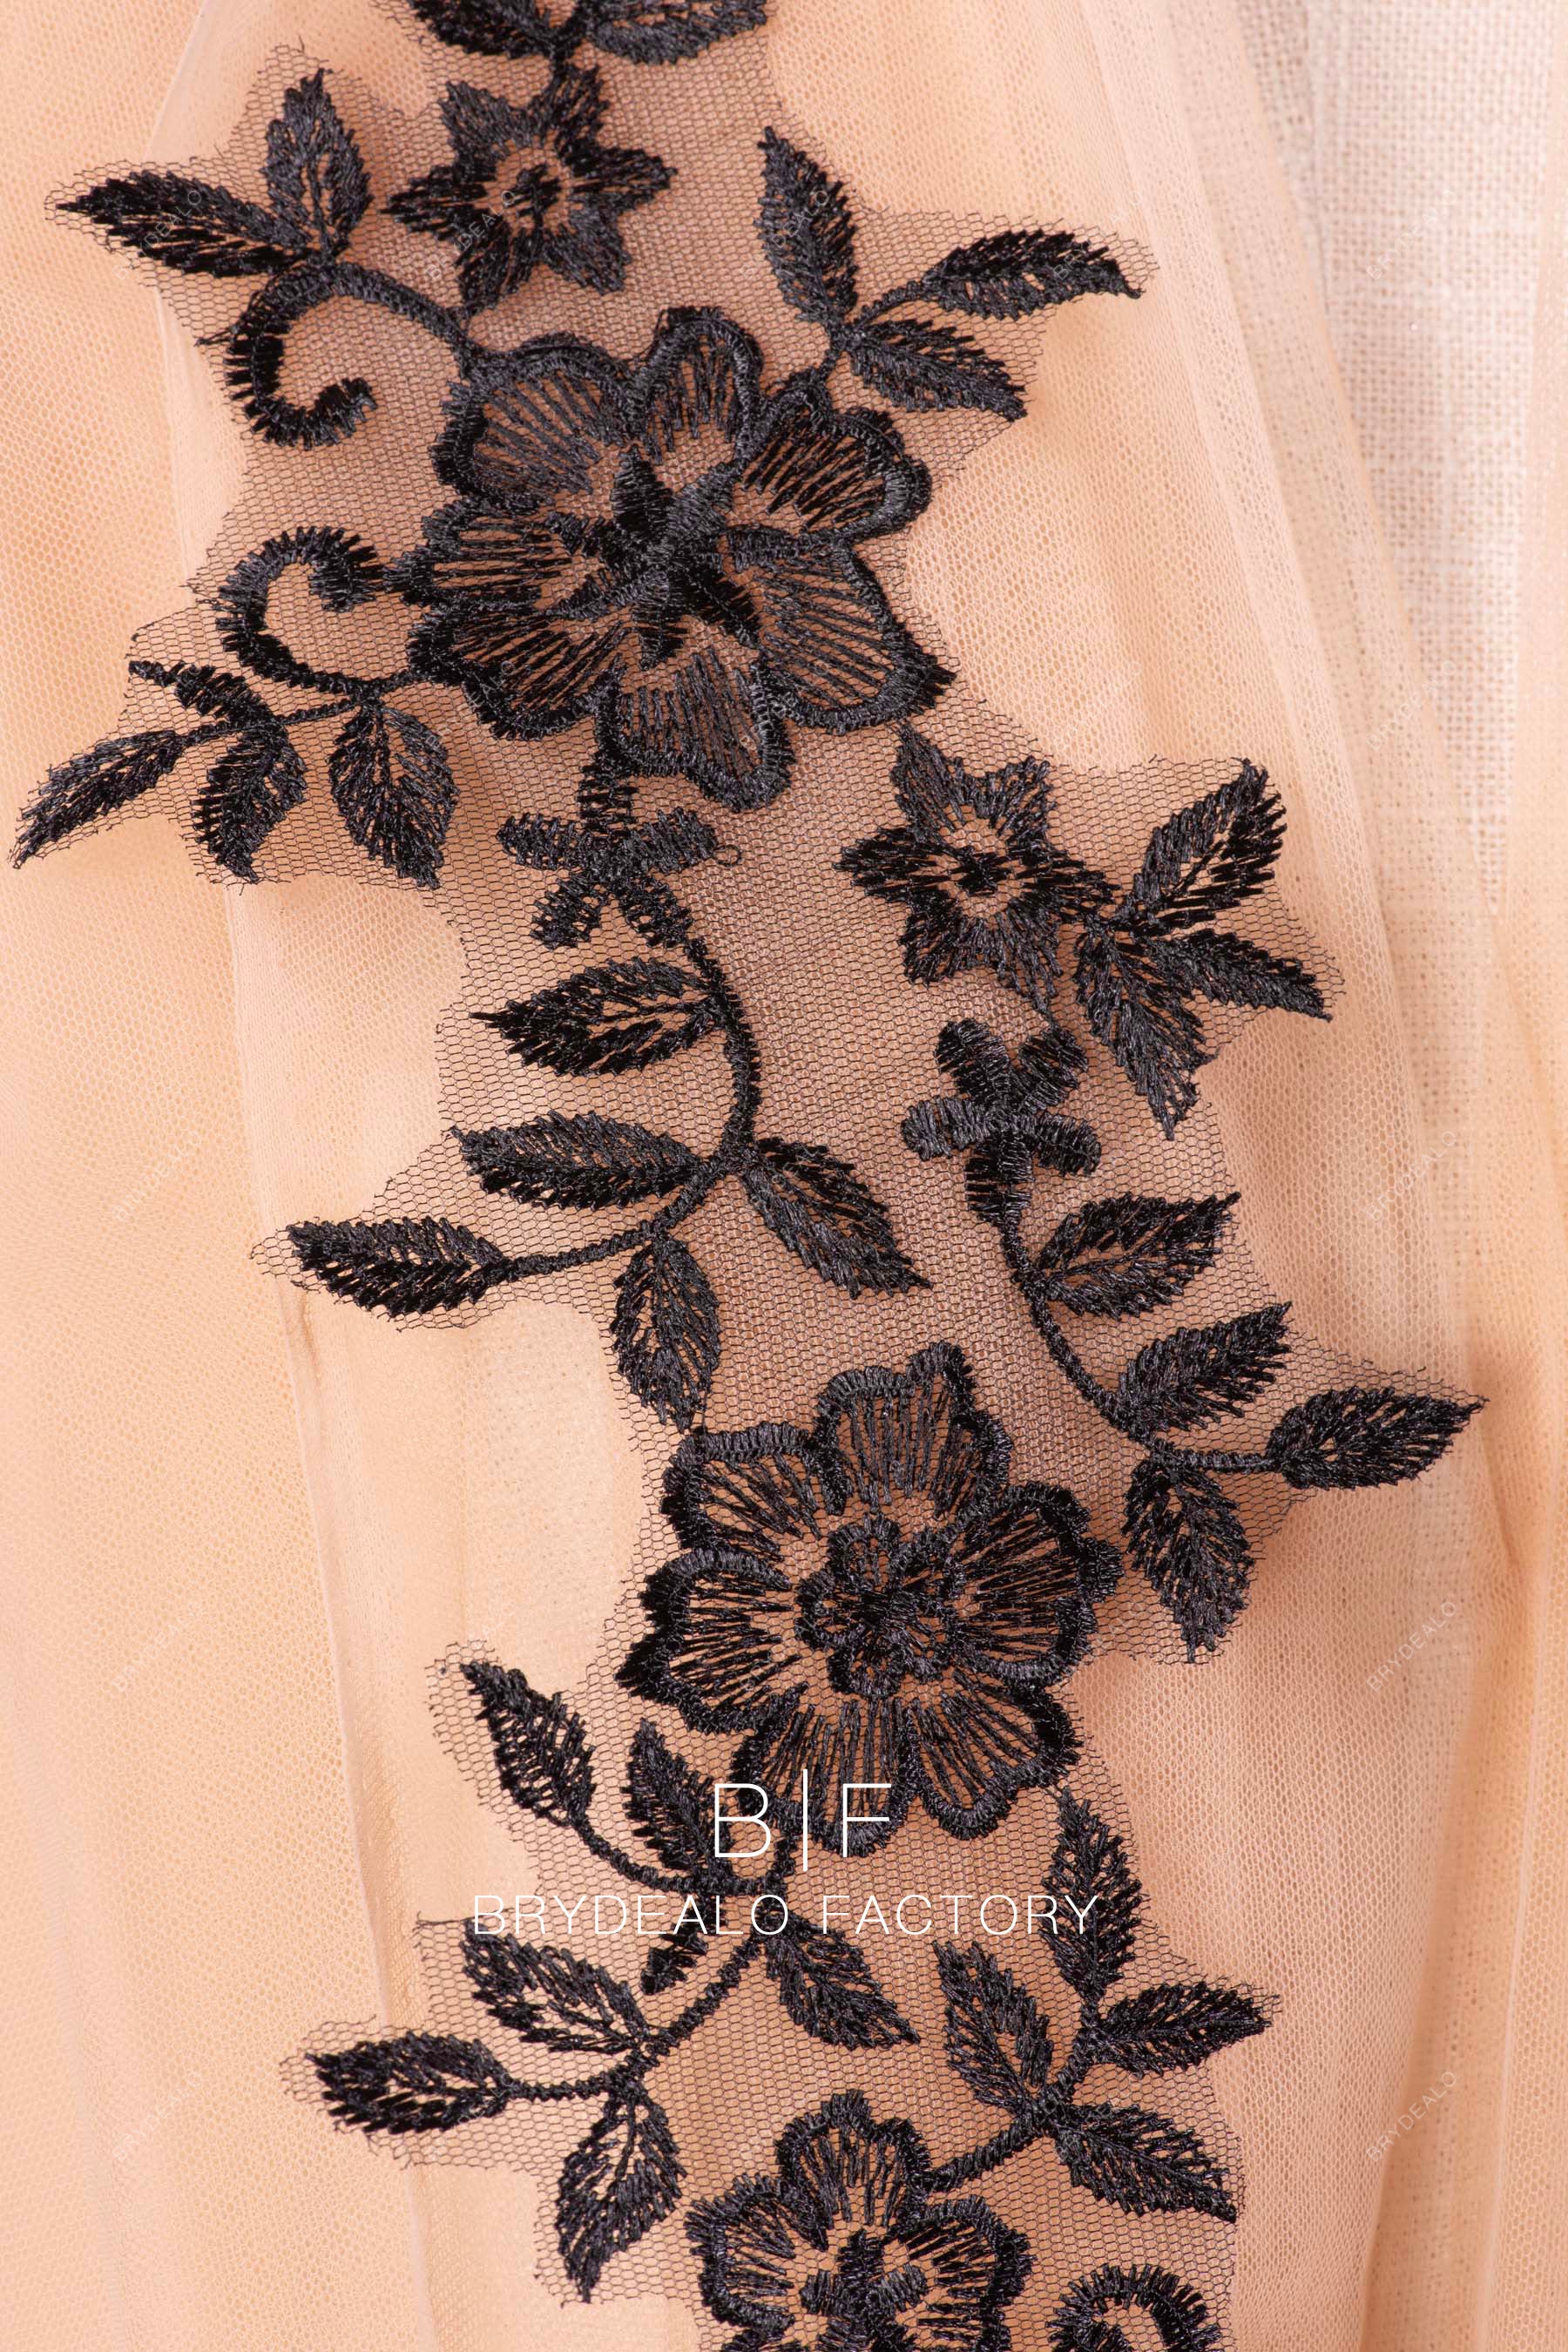 Pair of Black Flower Lace Appliques